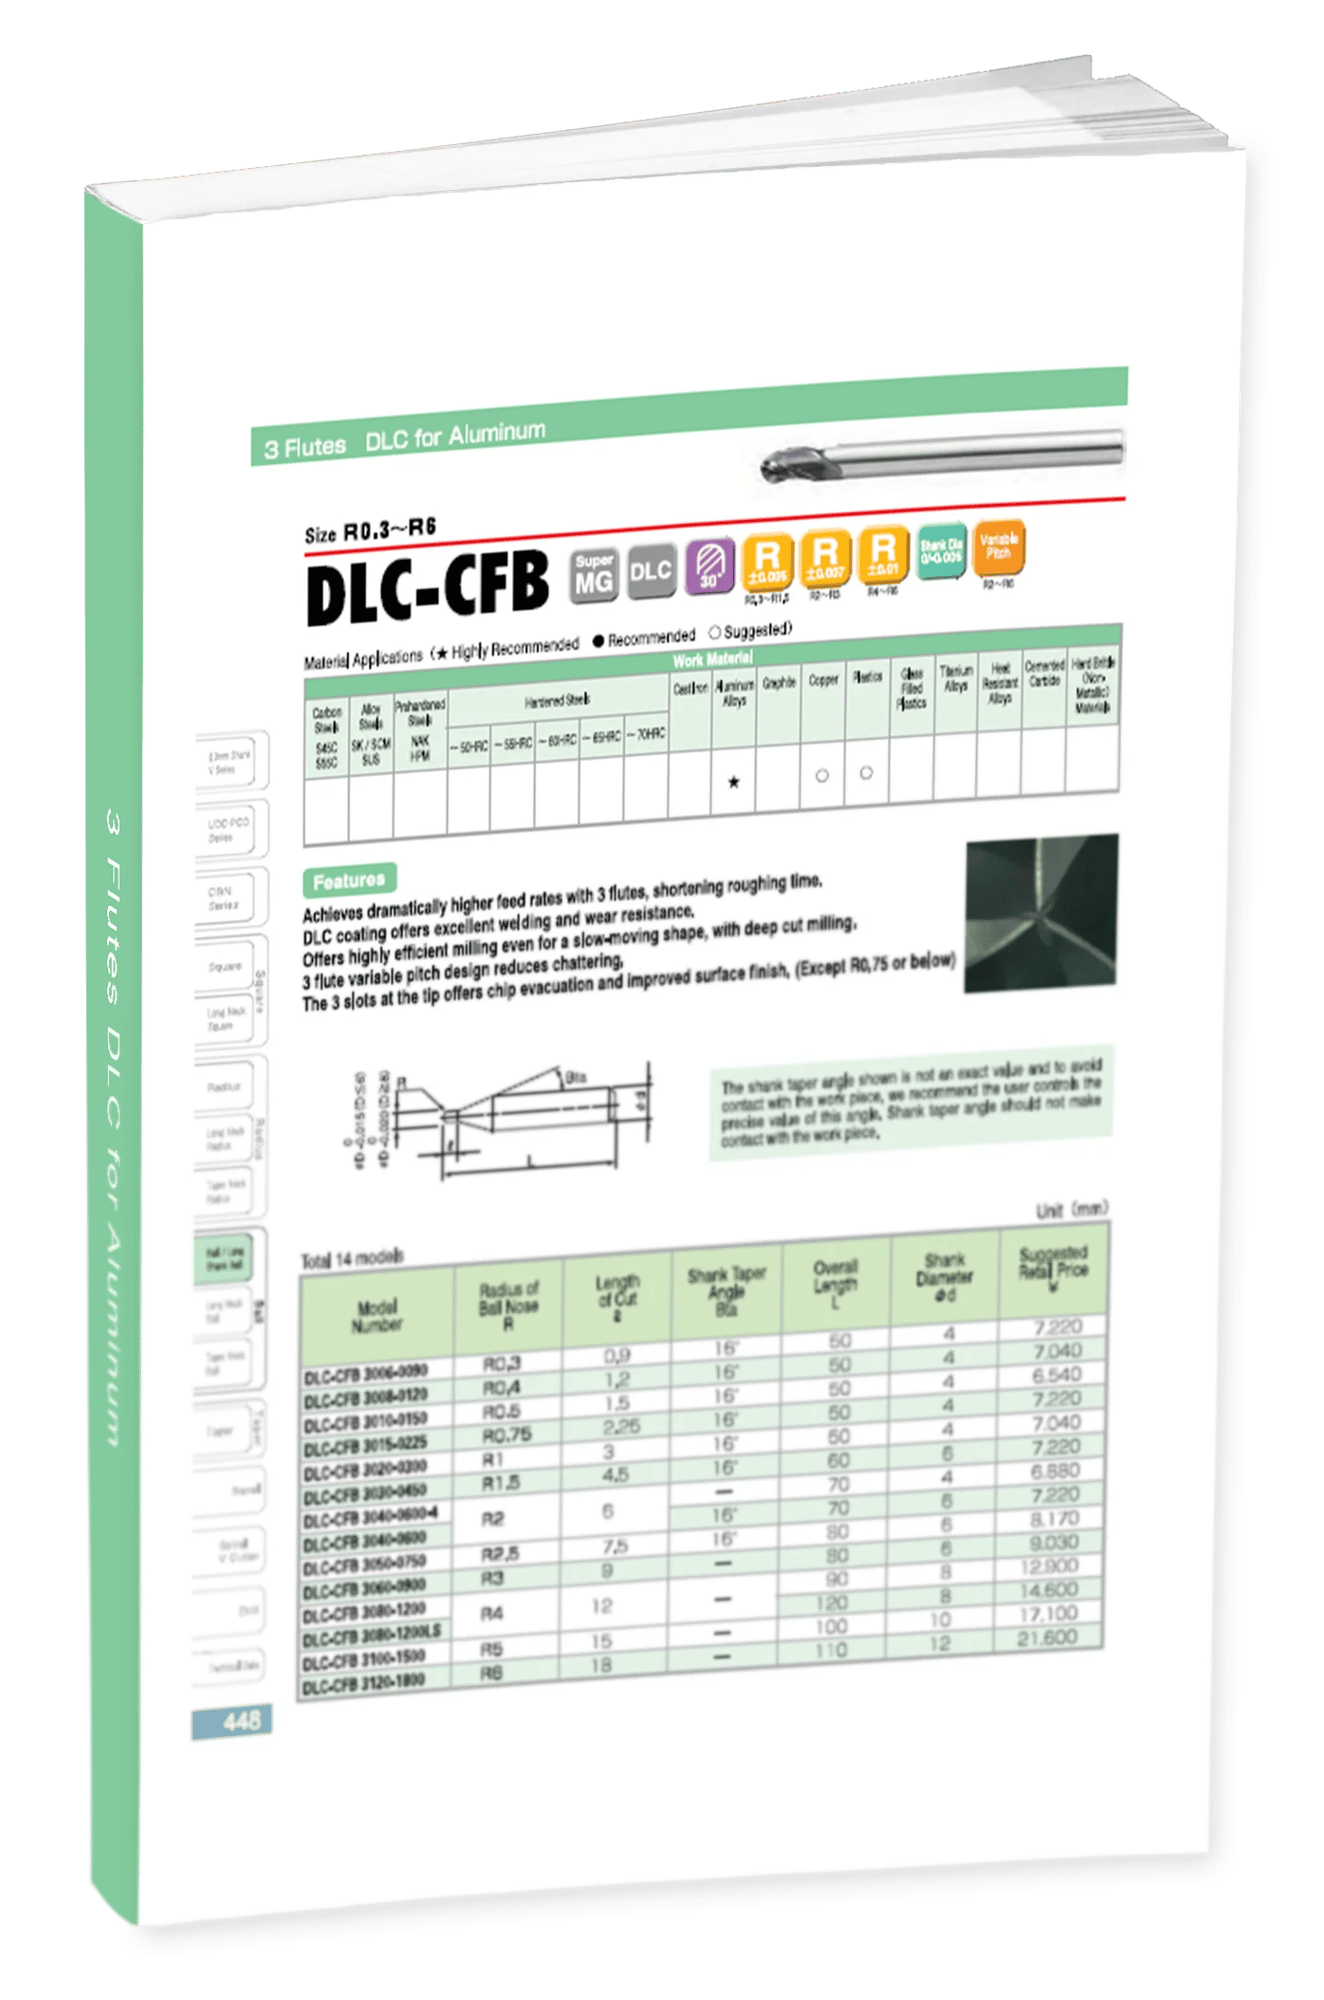 DLC-CFB 3 Flute Vol 21